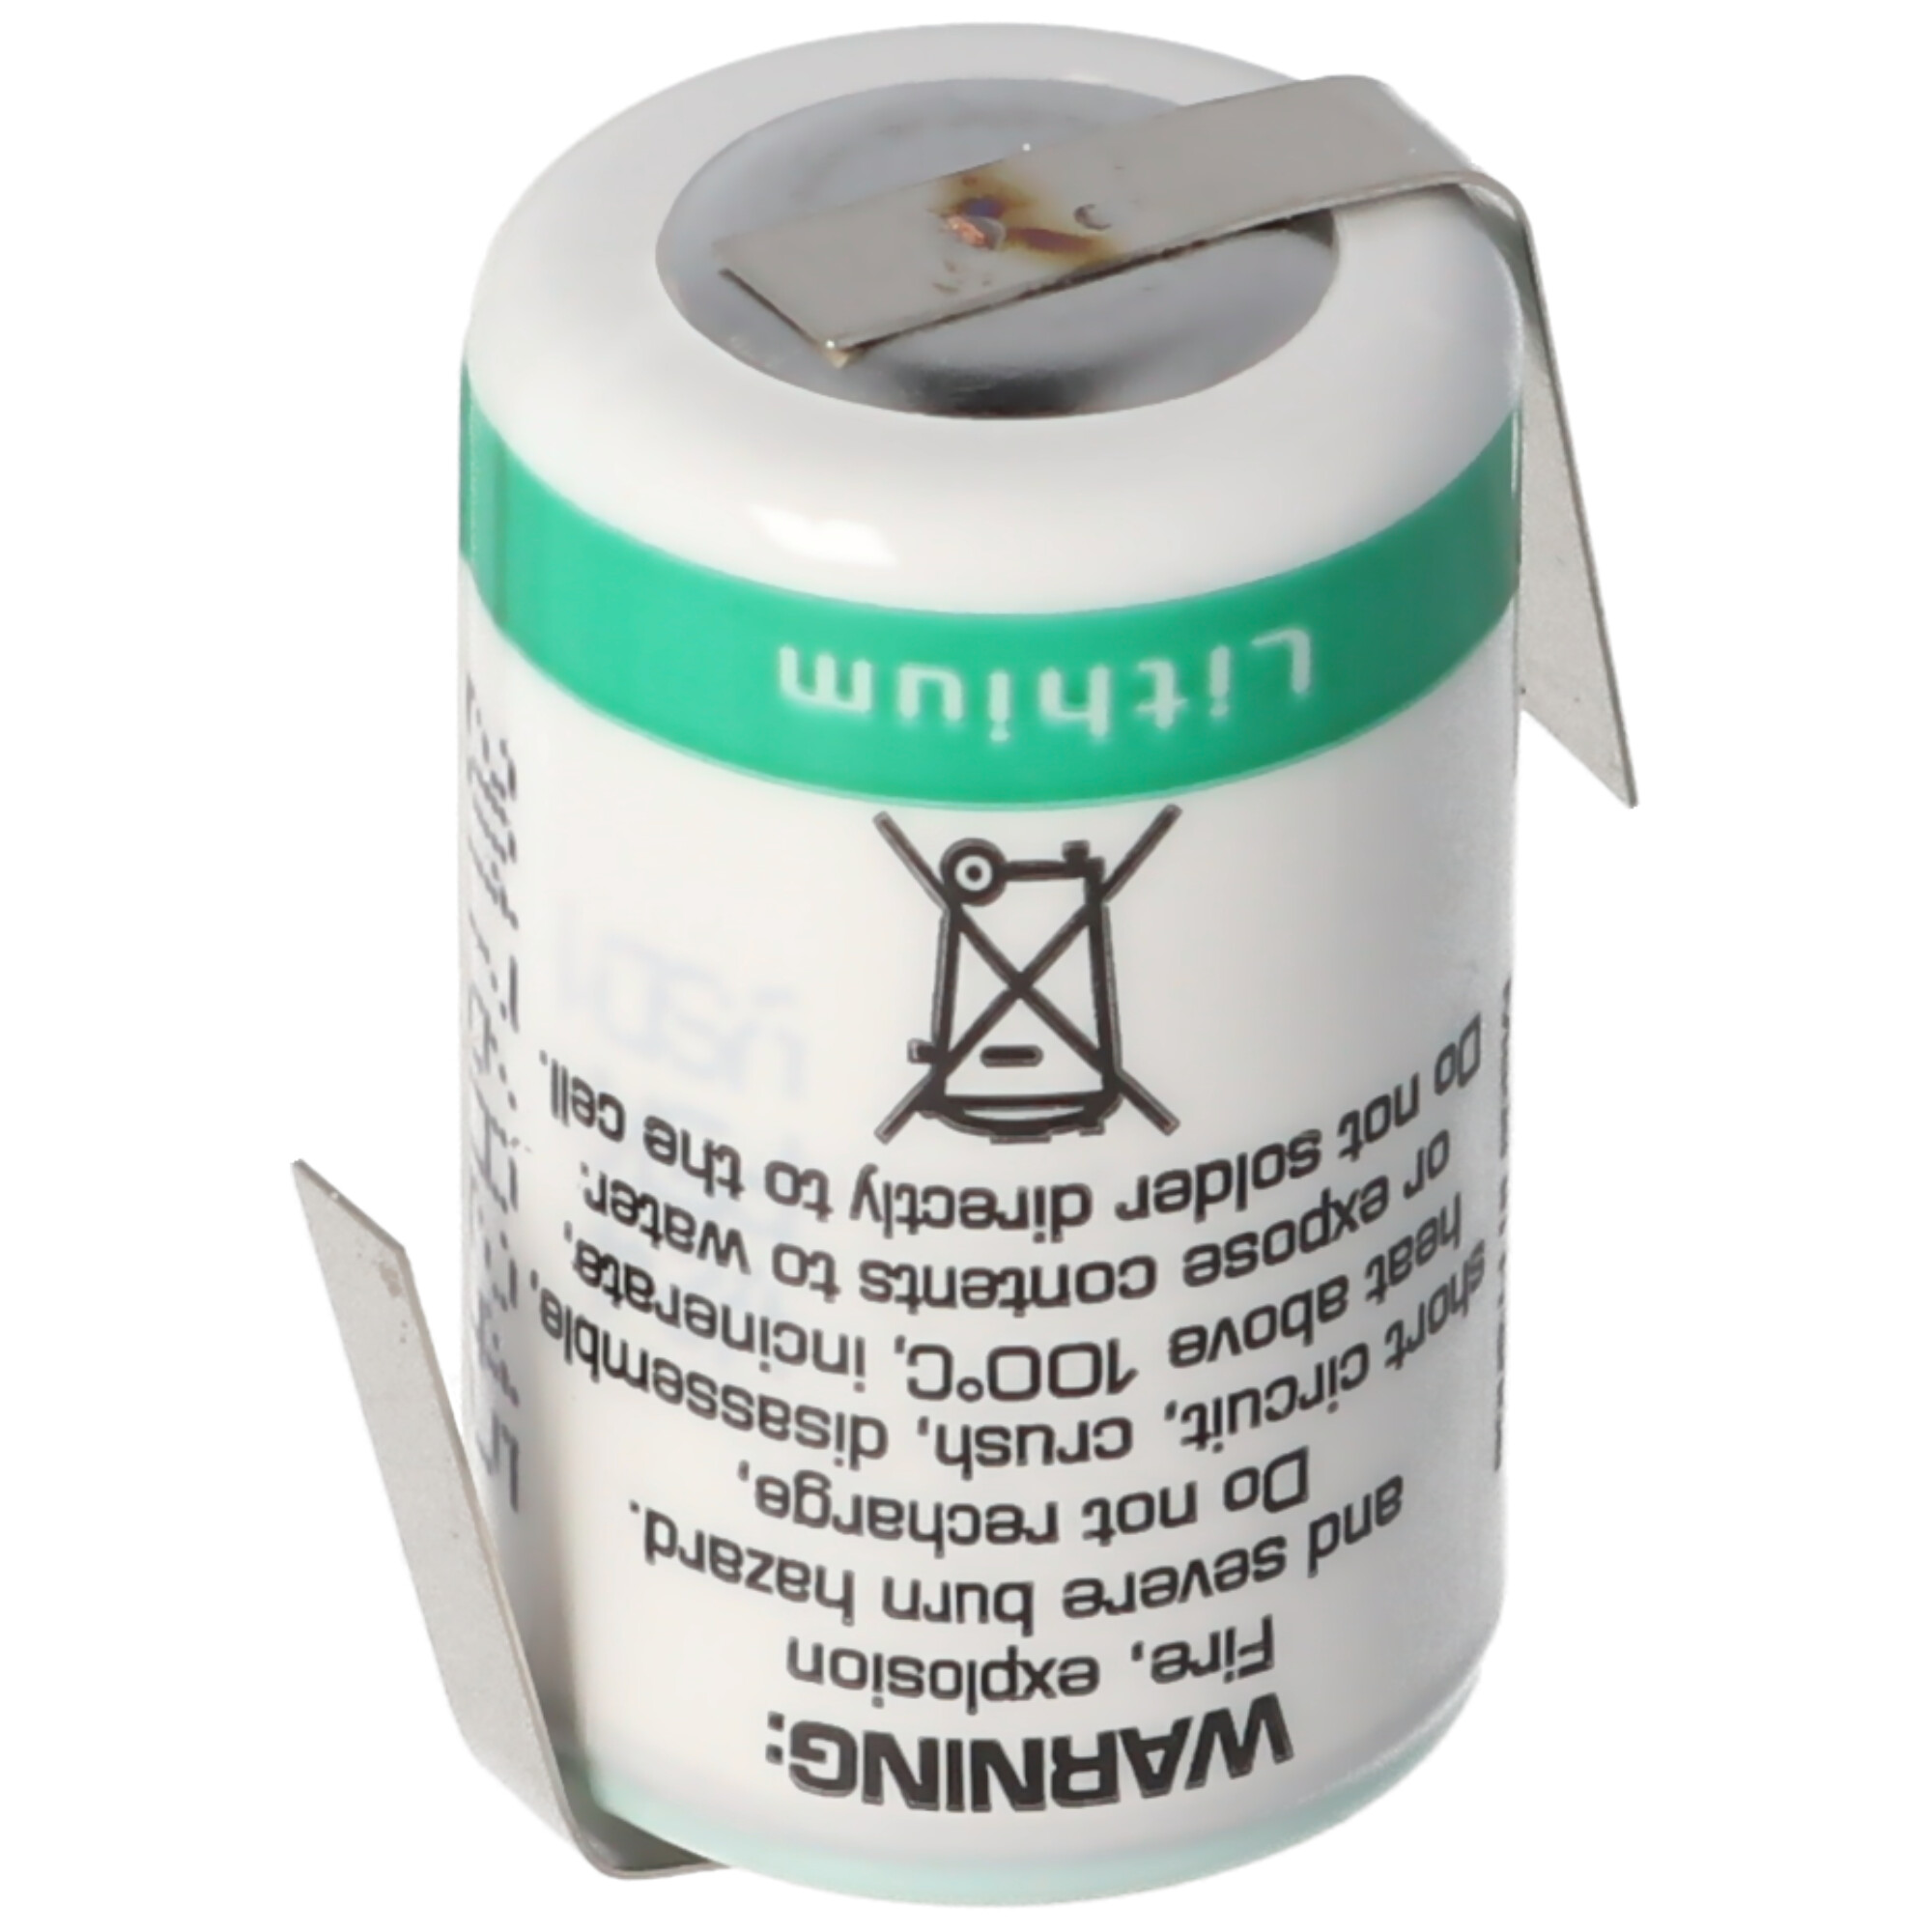 SAFT LS14250CNR Lithium Batterie, Size 1/2 AA, Lötfahnen Z-Form